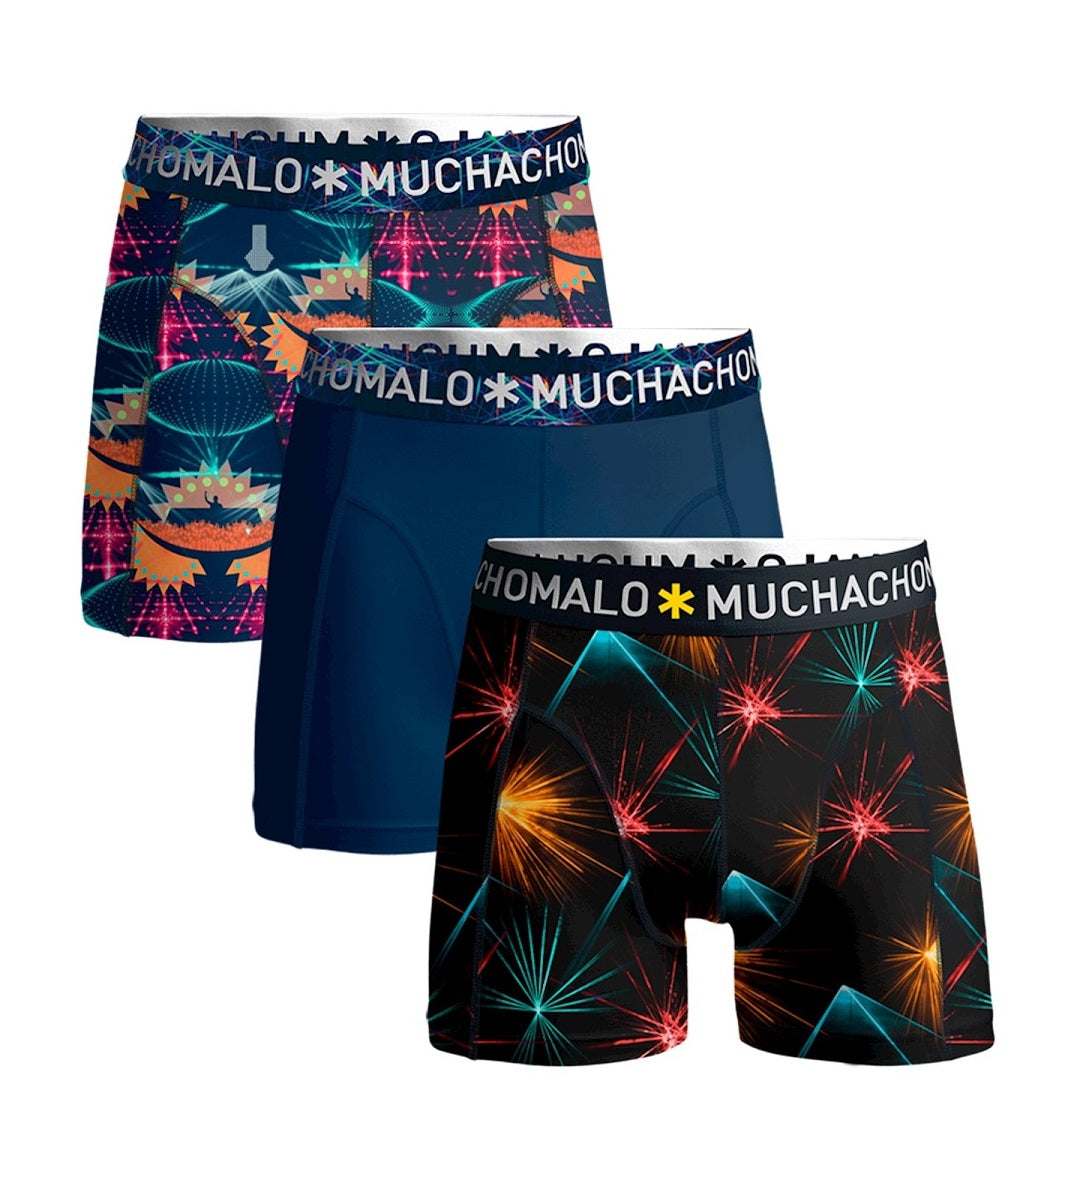 Muchachomalo 3-pack Underwear EDM Music